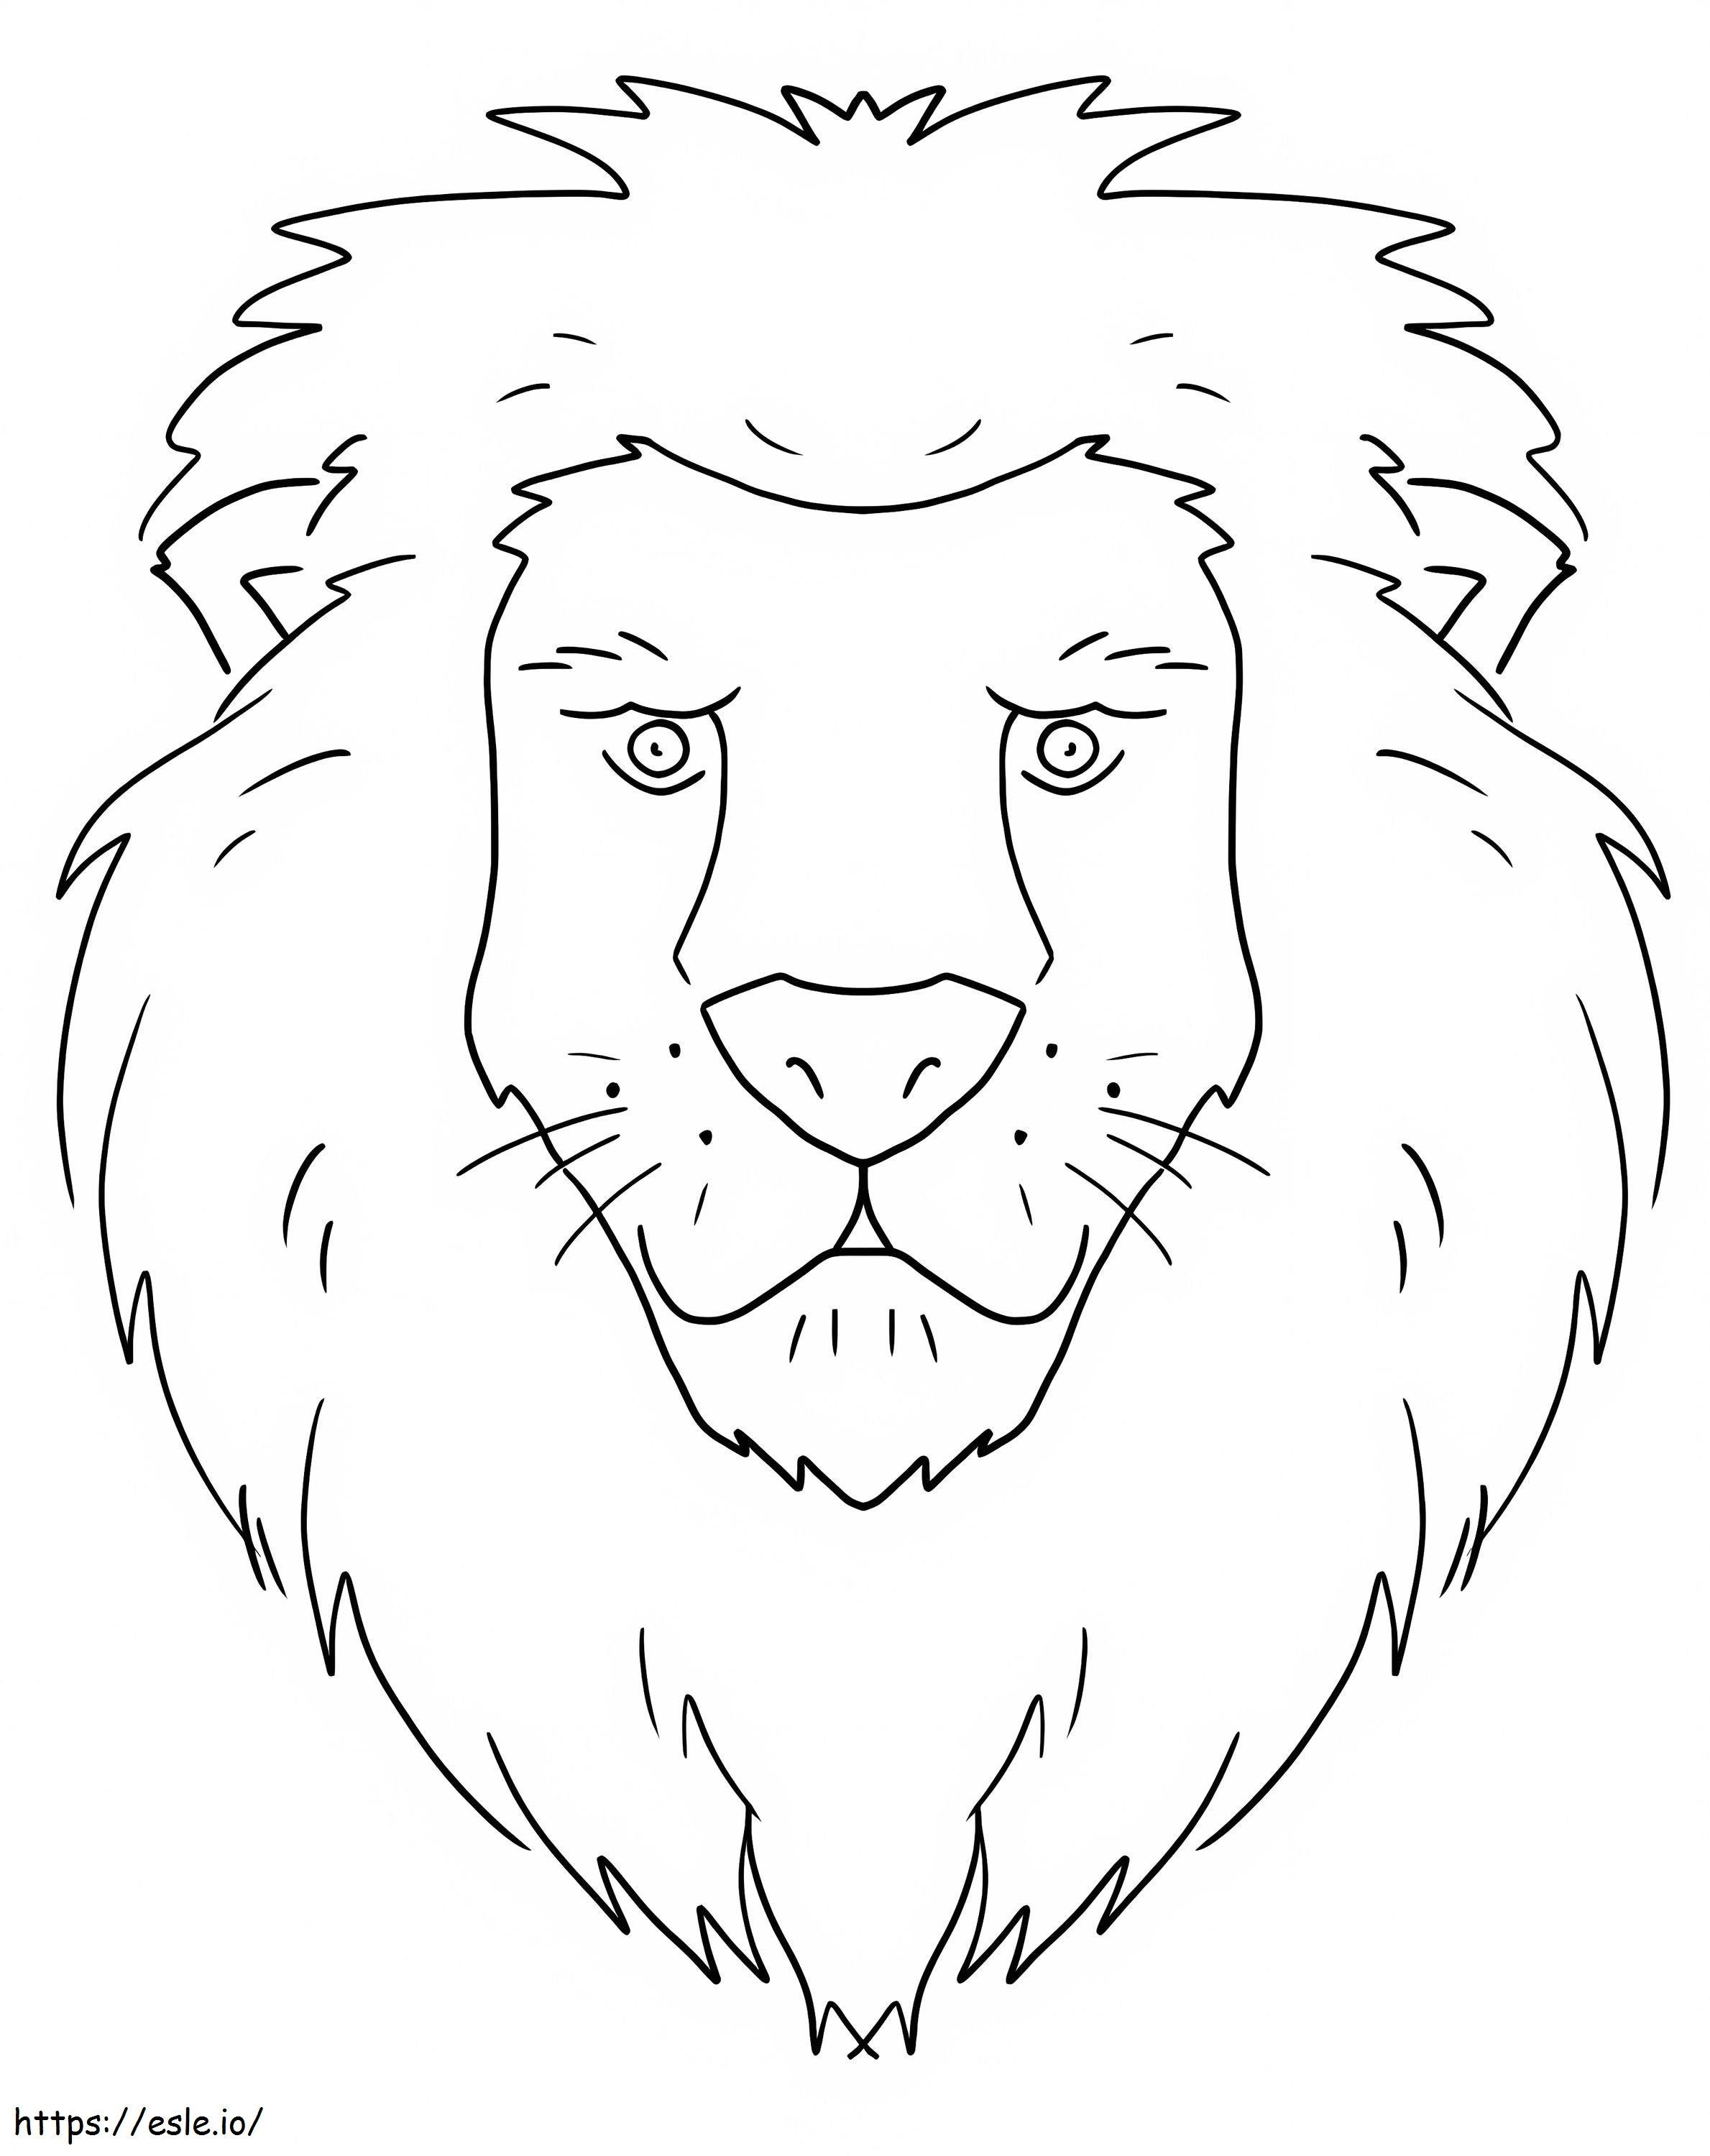 Cara de león básica para colorear